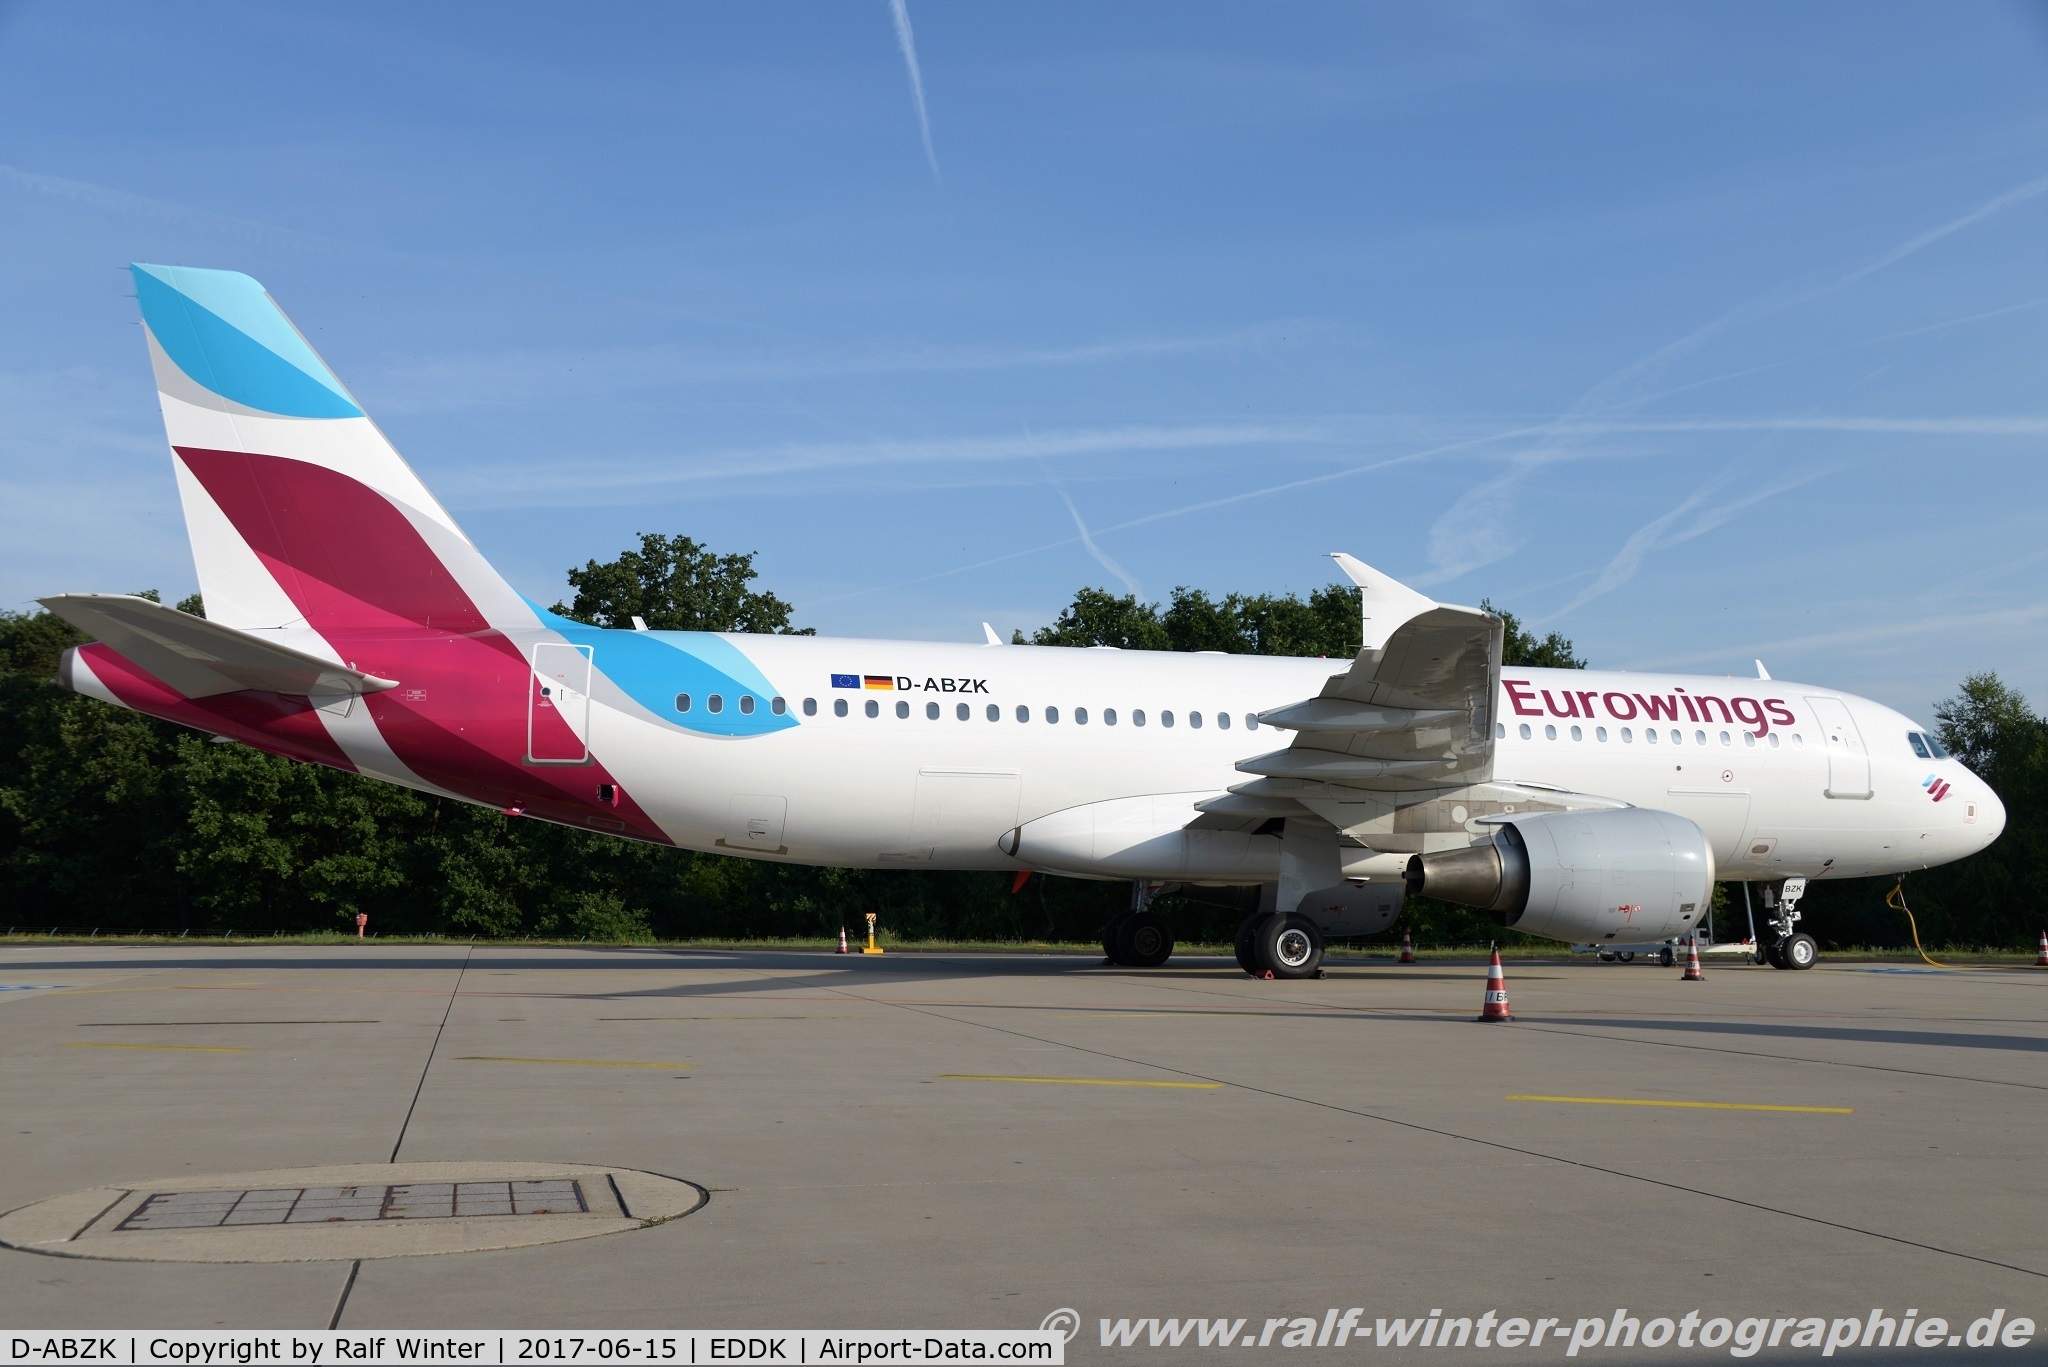 D-ABZK, 2007 Airbus A320-216 C/N 3213, Airbus A320-216 - EW EWG Eurowings - 3213 - D-ABZK - 15.06.2017 - CGN